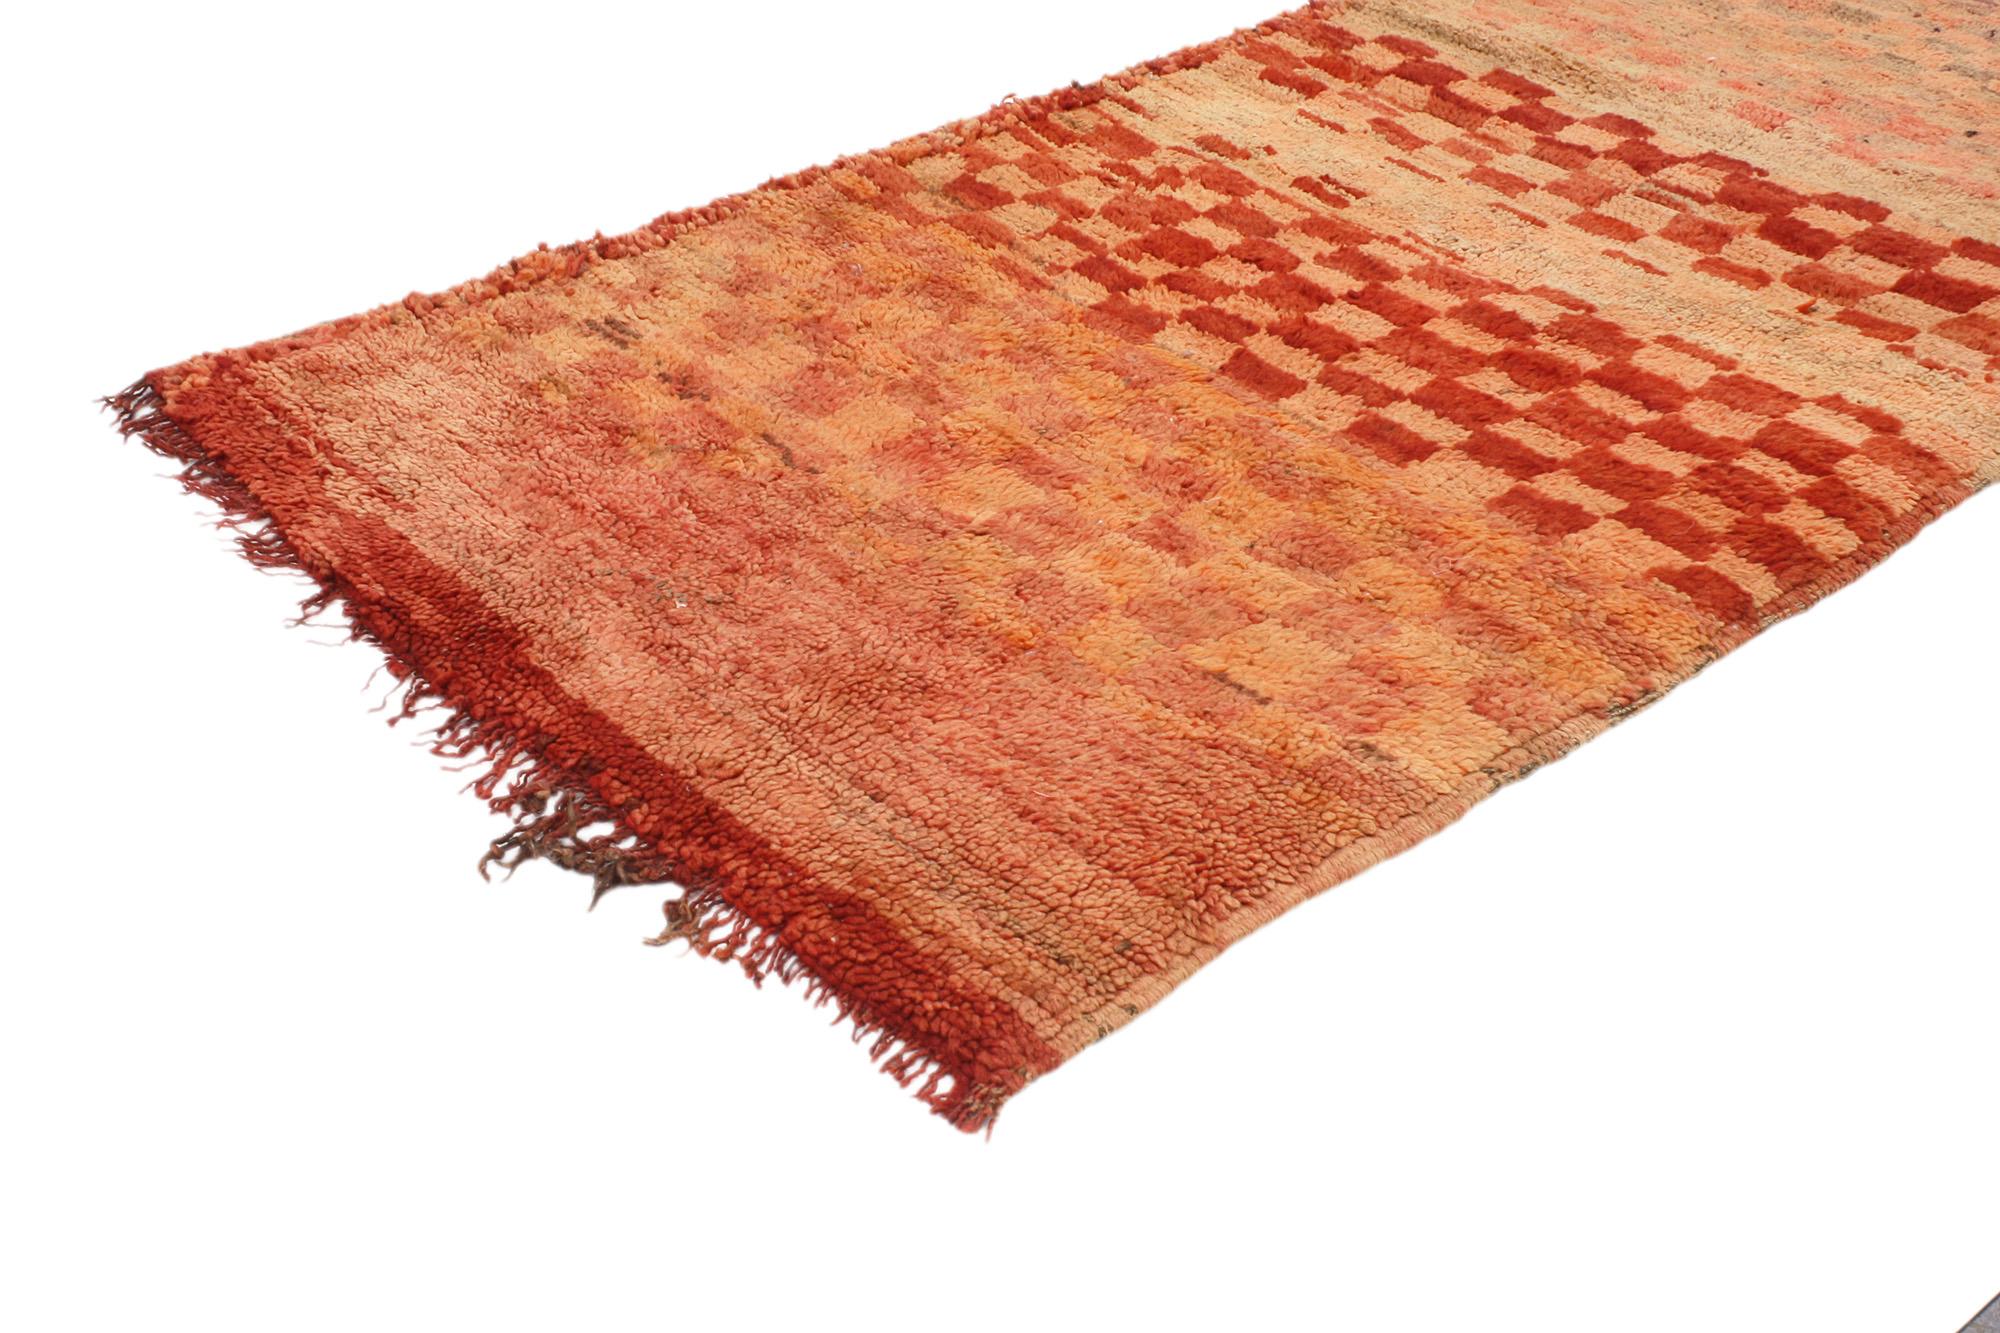 20453 Vintage Karierter Boujad Marokkanischer Teppich, 02'06 x 06'03. Die aus der marokkanischen Region Boujad stammenden Boujad-Teppiche sind weit mehr als nur einfache Bodenbeläge; sie sind exquisite handgewebte Meisterwerke, die das lebendige